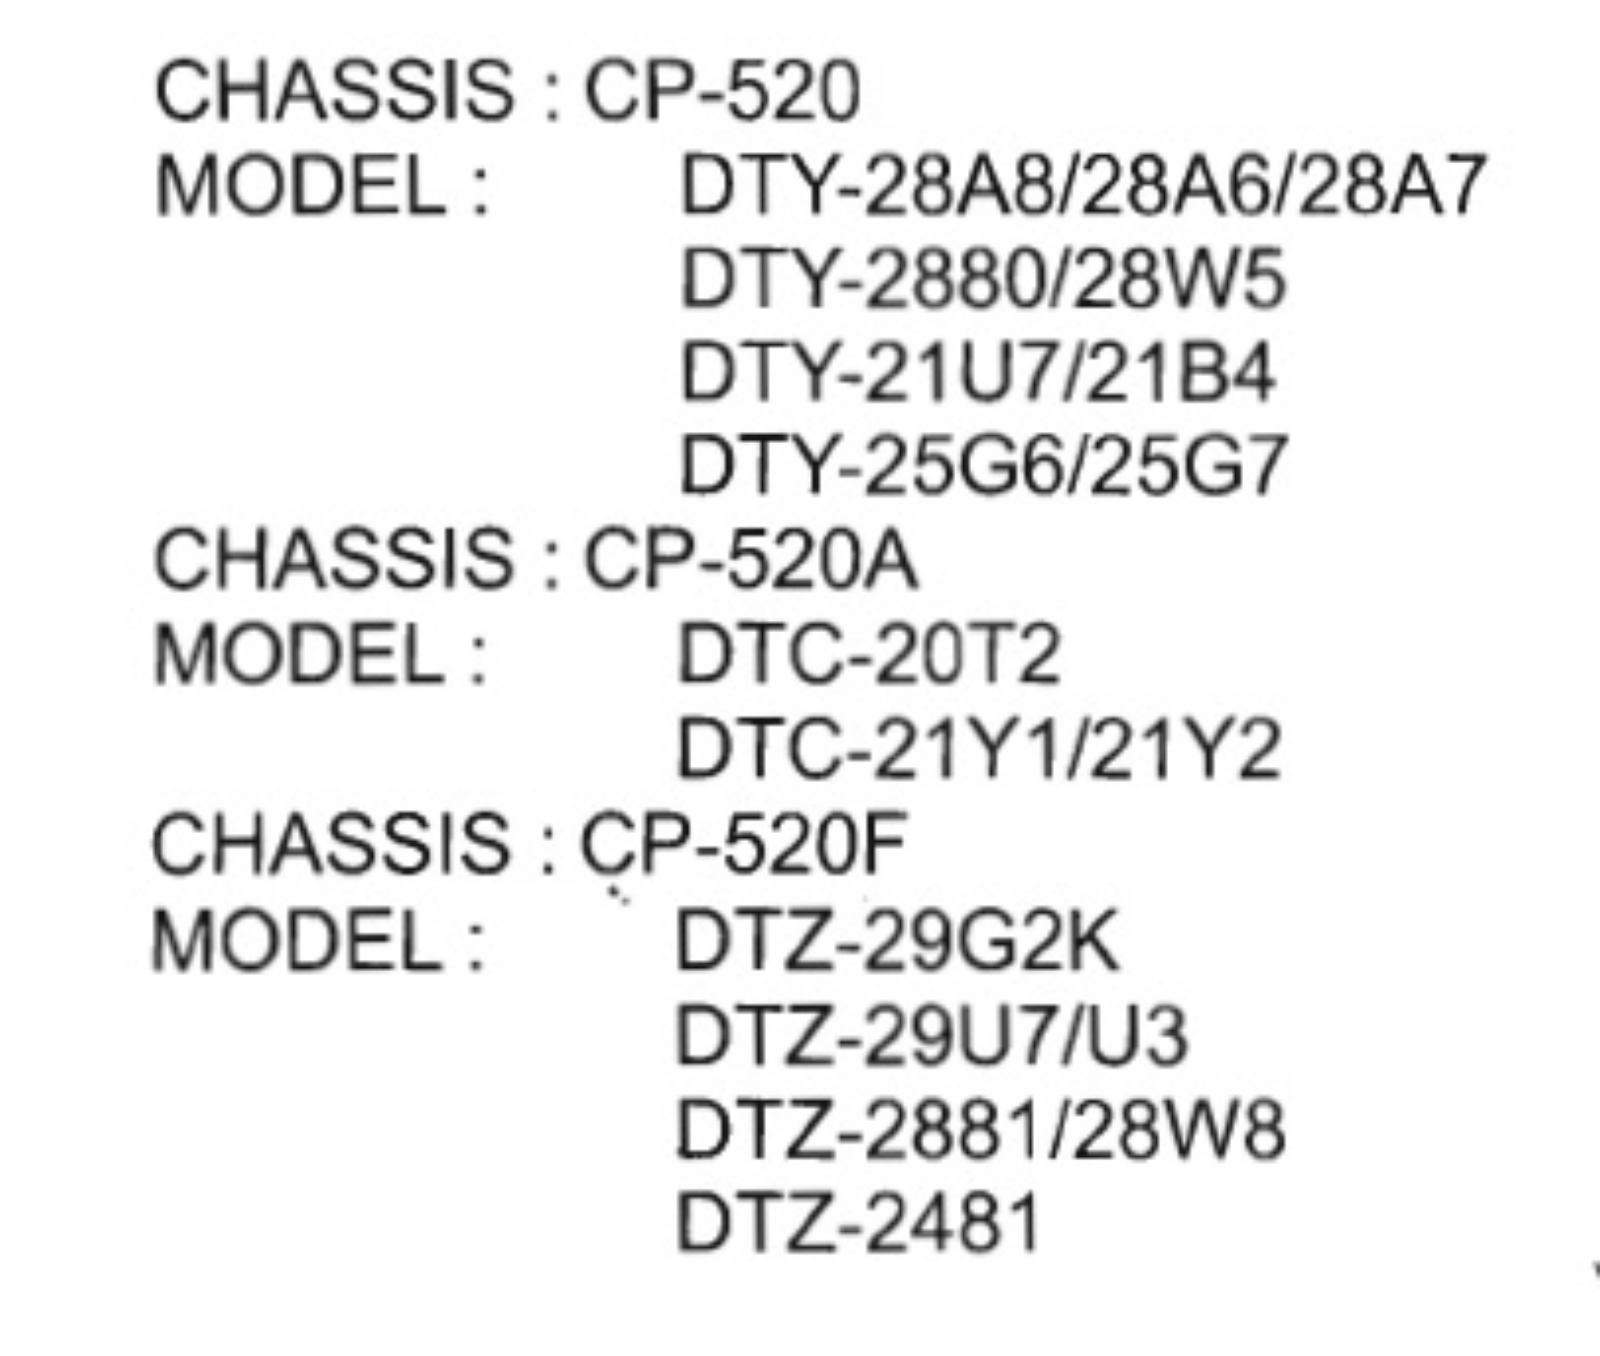 Daewoo DTY-2880, DTY-25G6, DTZ-2481, DTZ-29G2K, DTC-20T2 Schematics